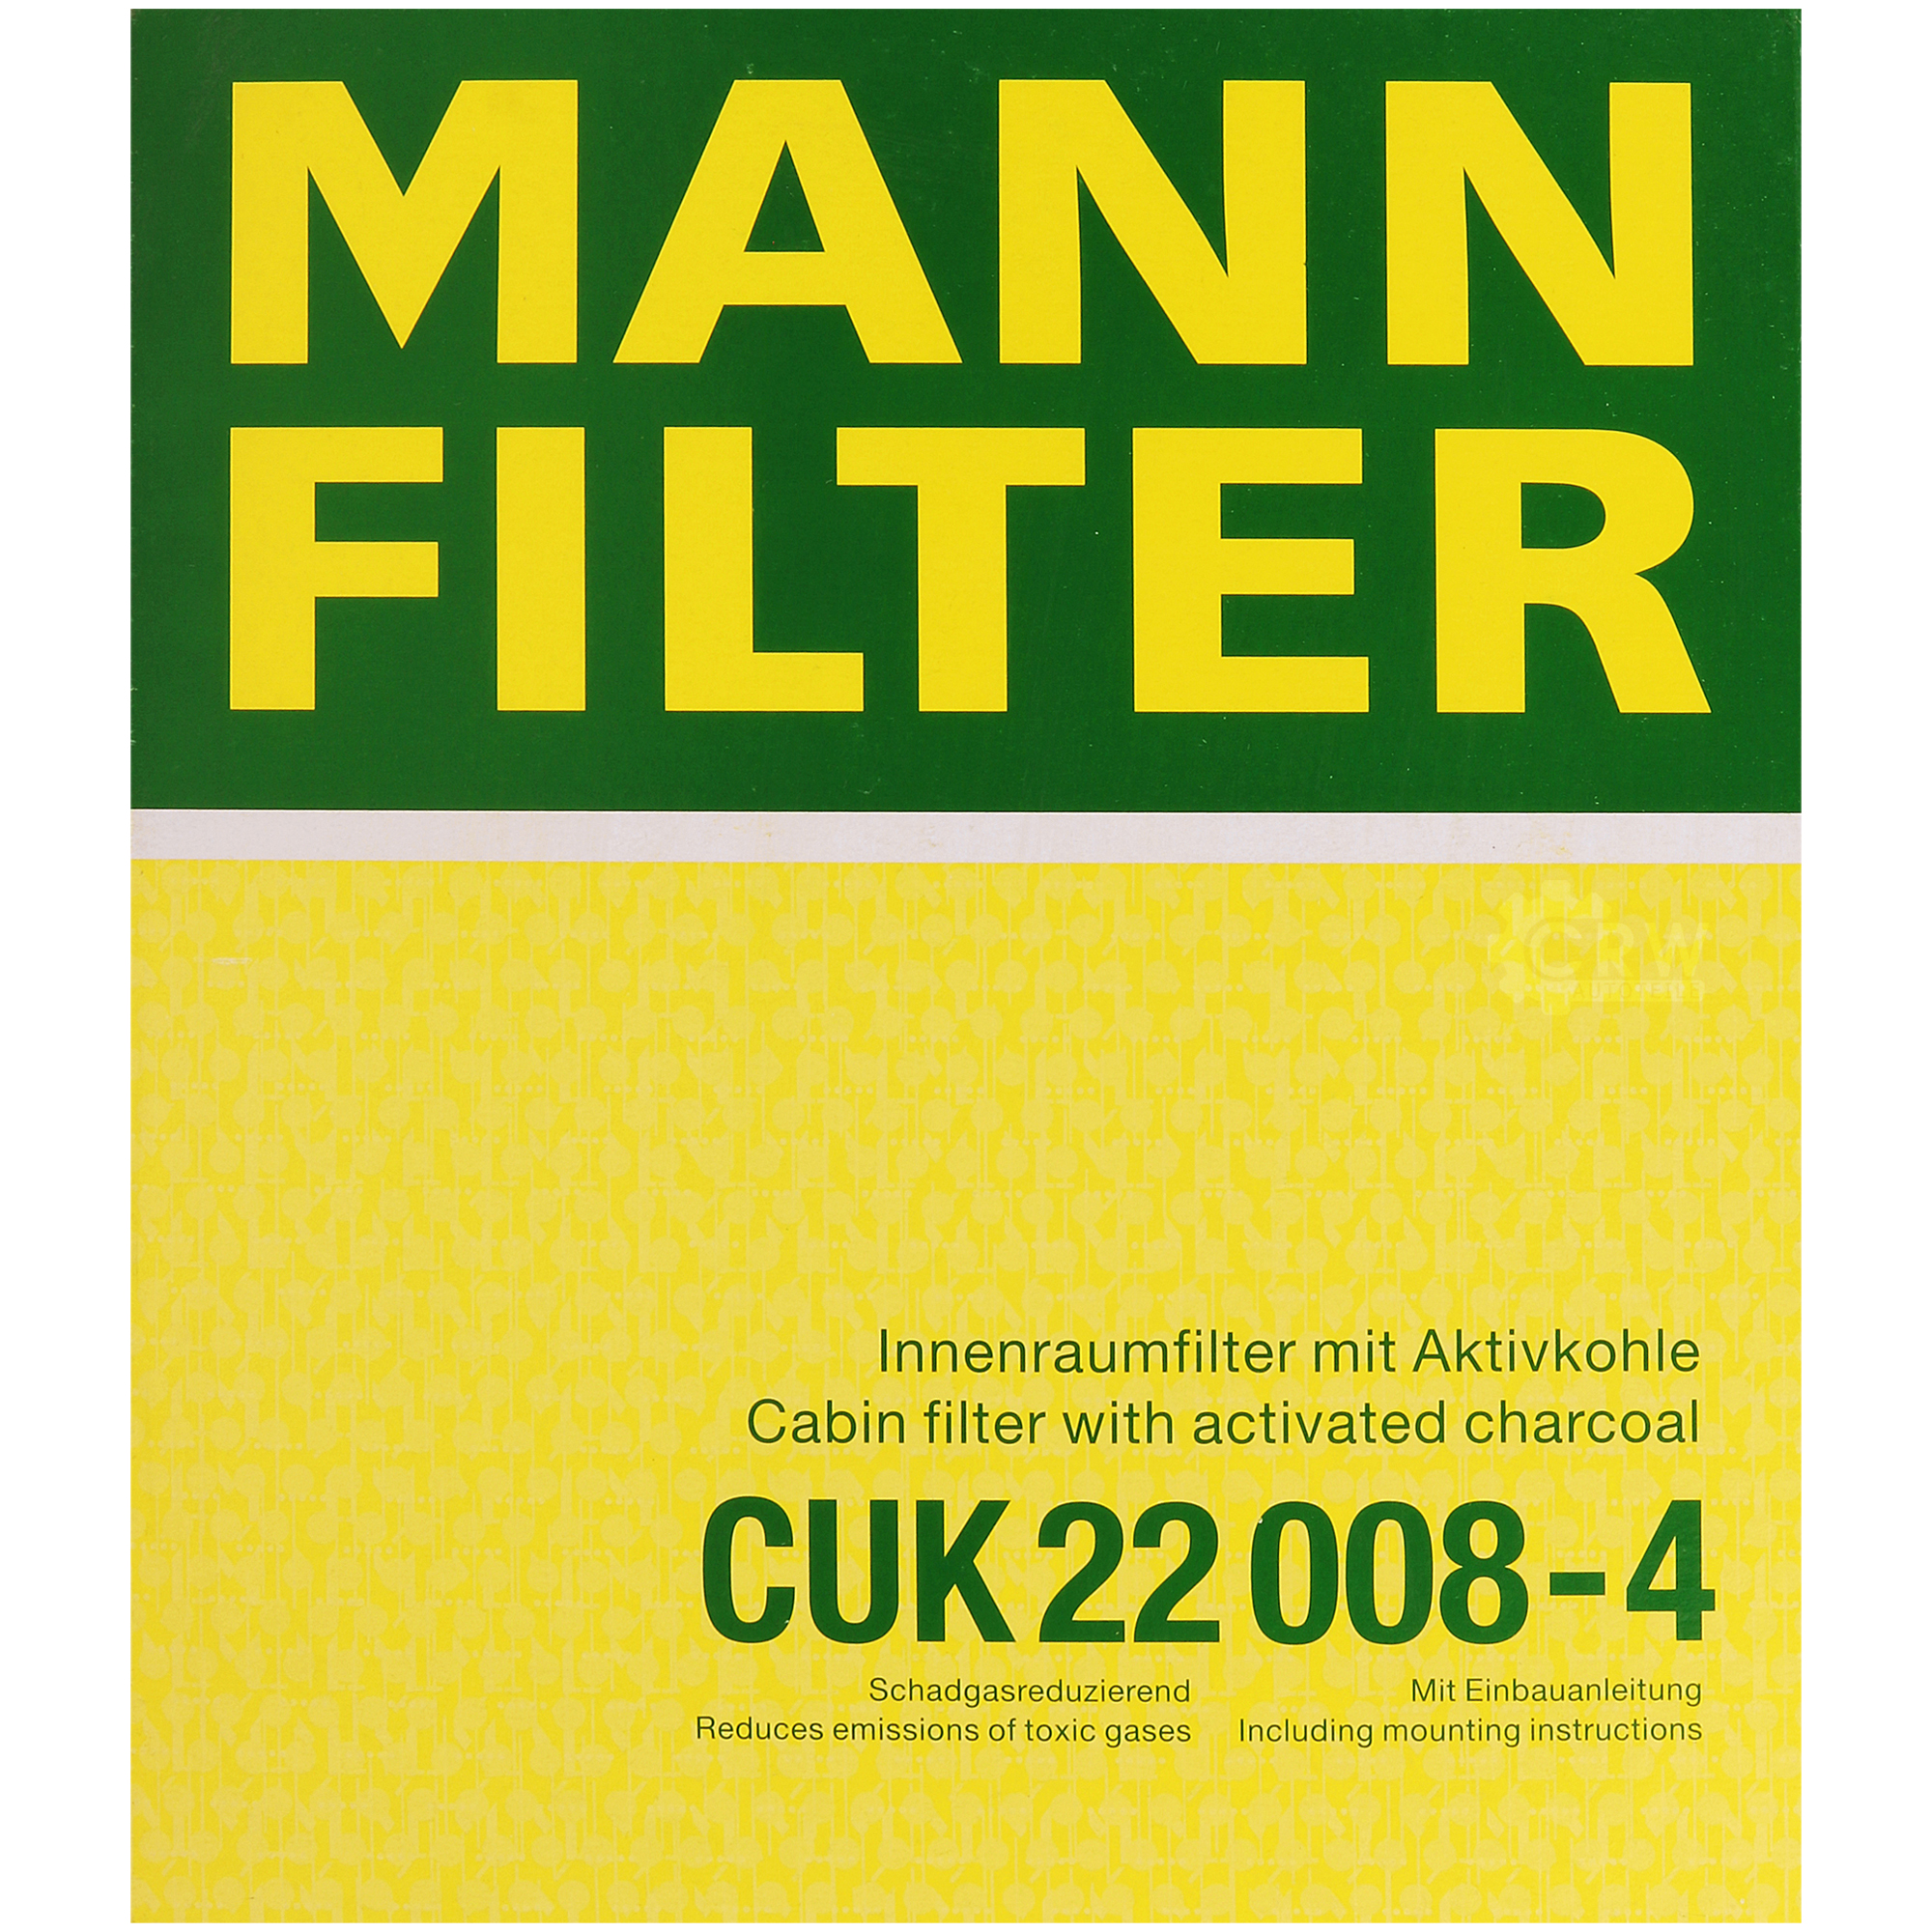 MANN-FILTER Innenraumfilter Pollenfilter Aktivkohle CUK 22 008-4